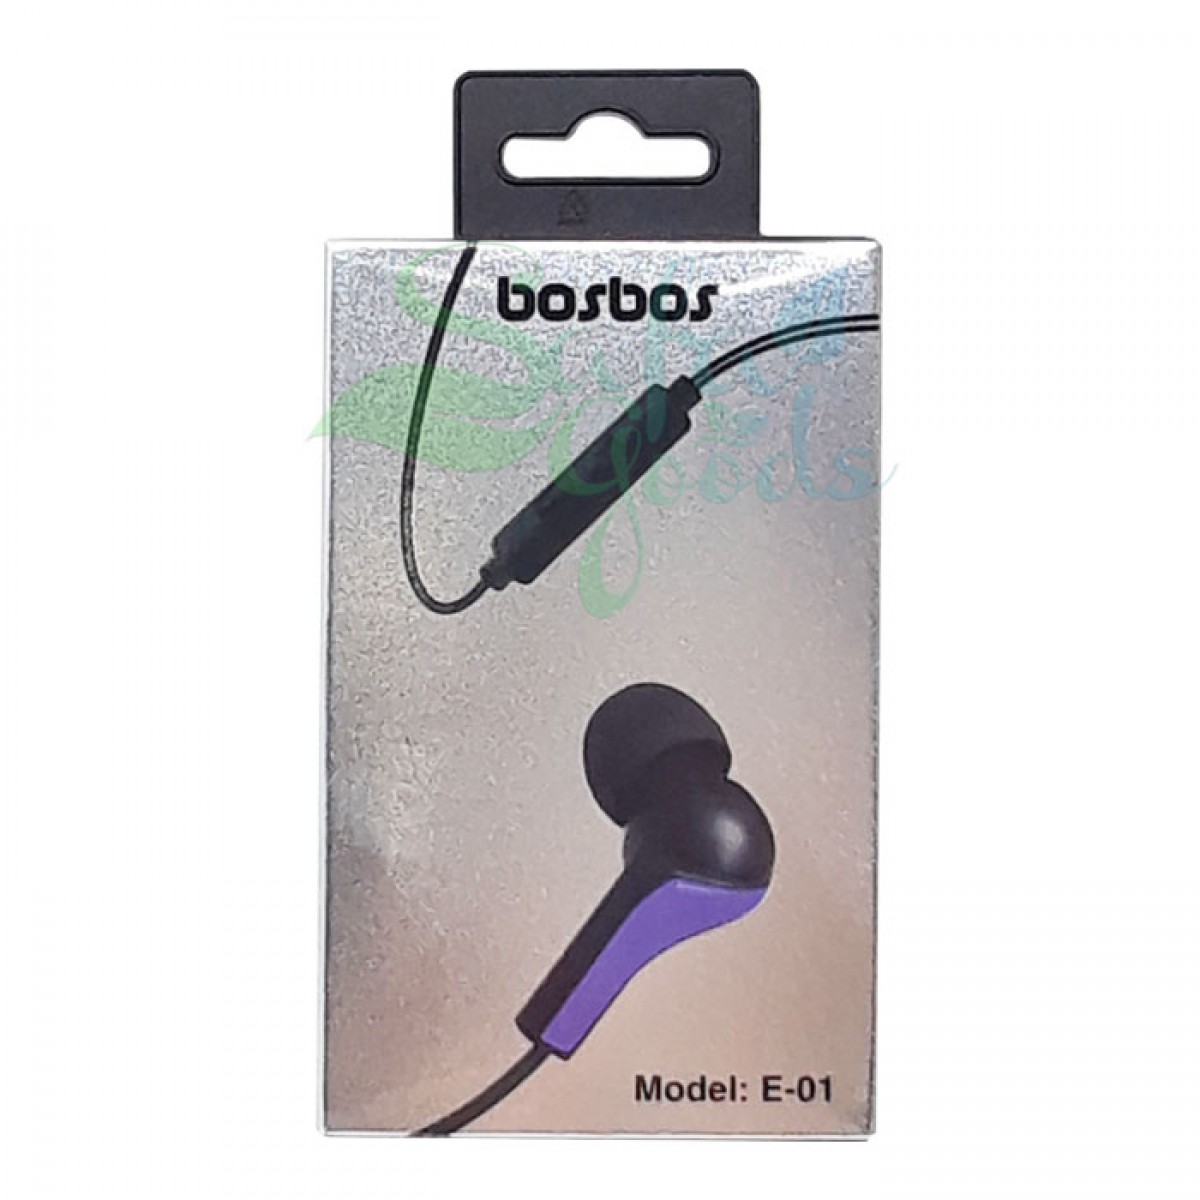 Bosbos E-01 Earphones